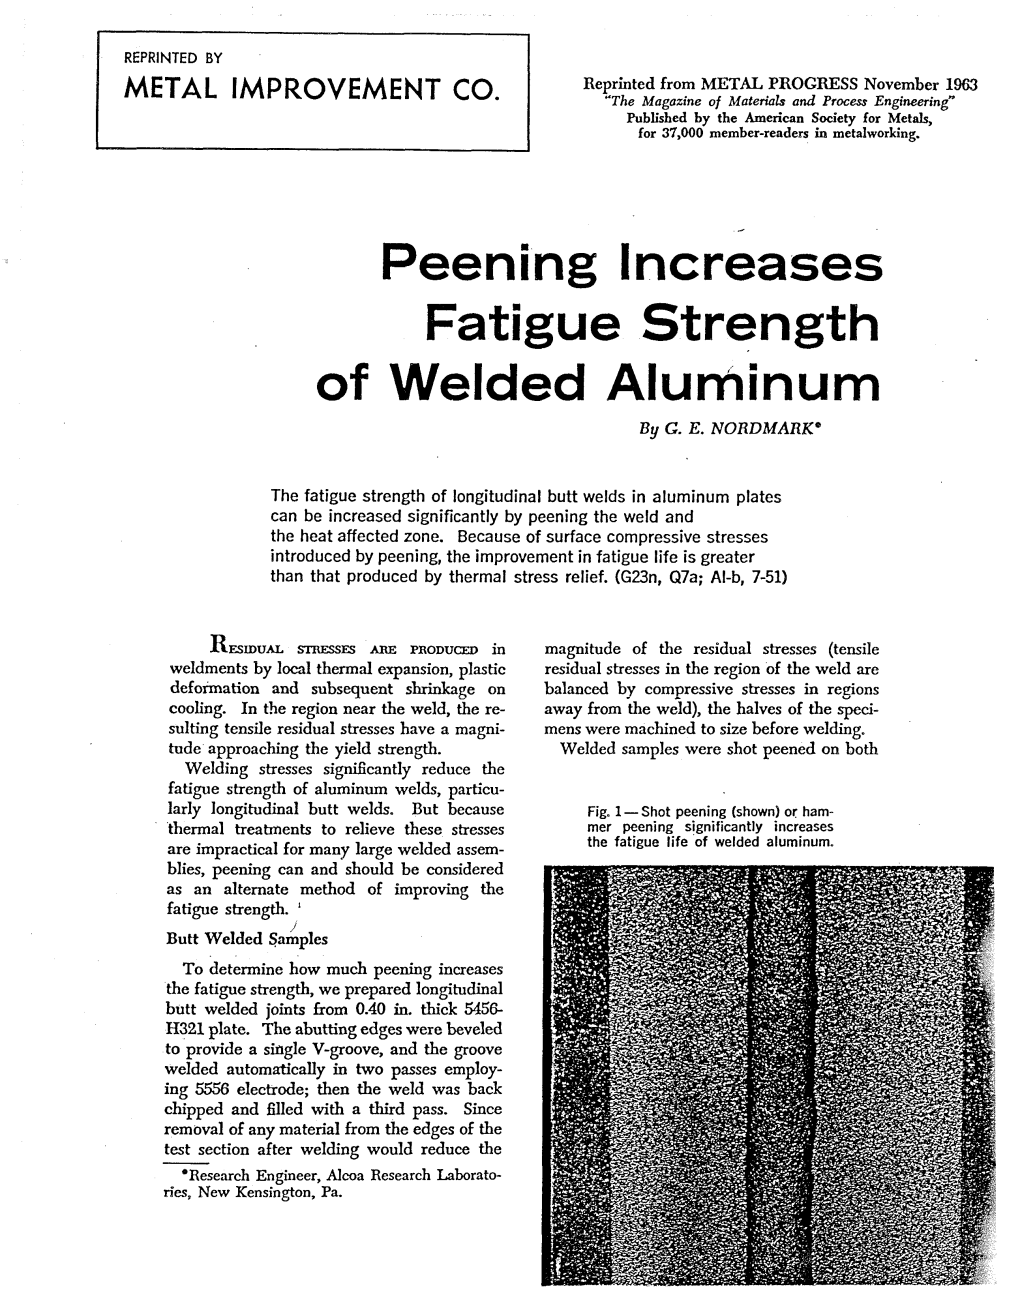 Peening Increases Fatigue Strength of Welded Aluminum